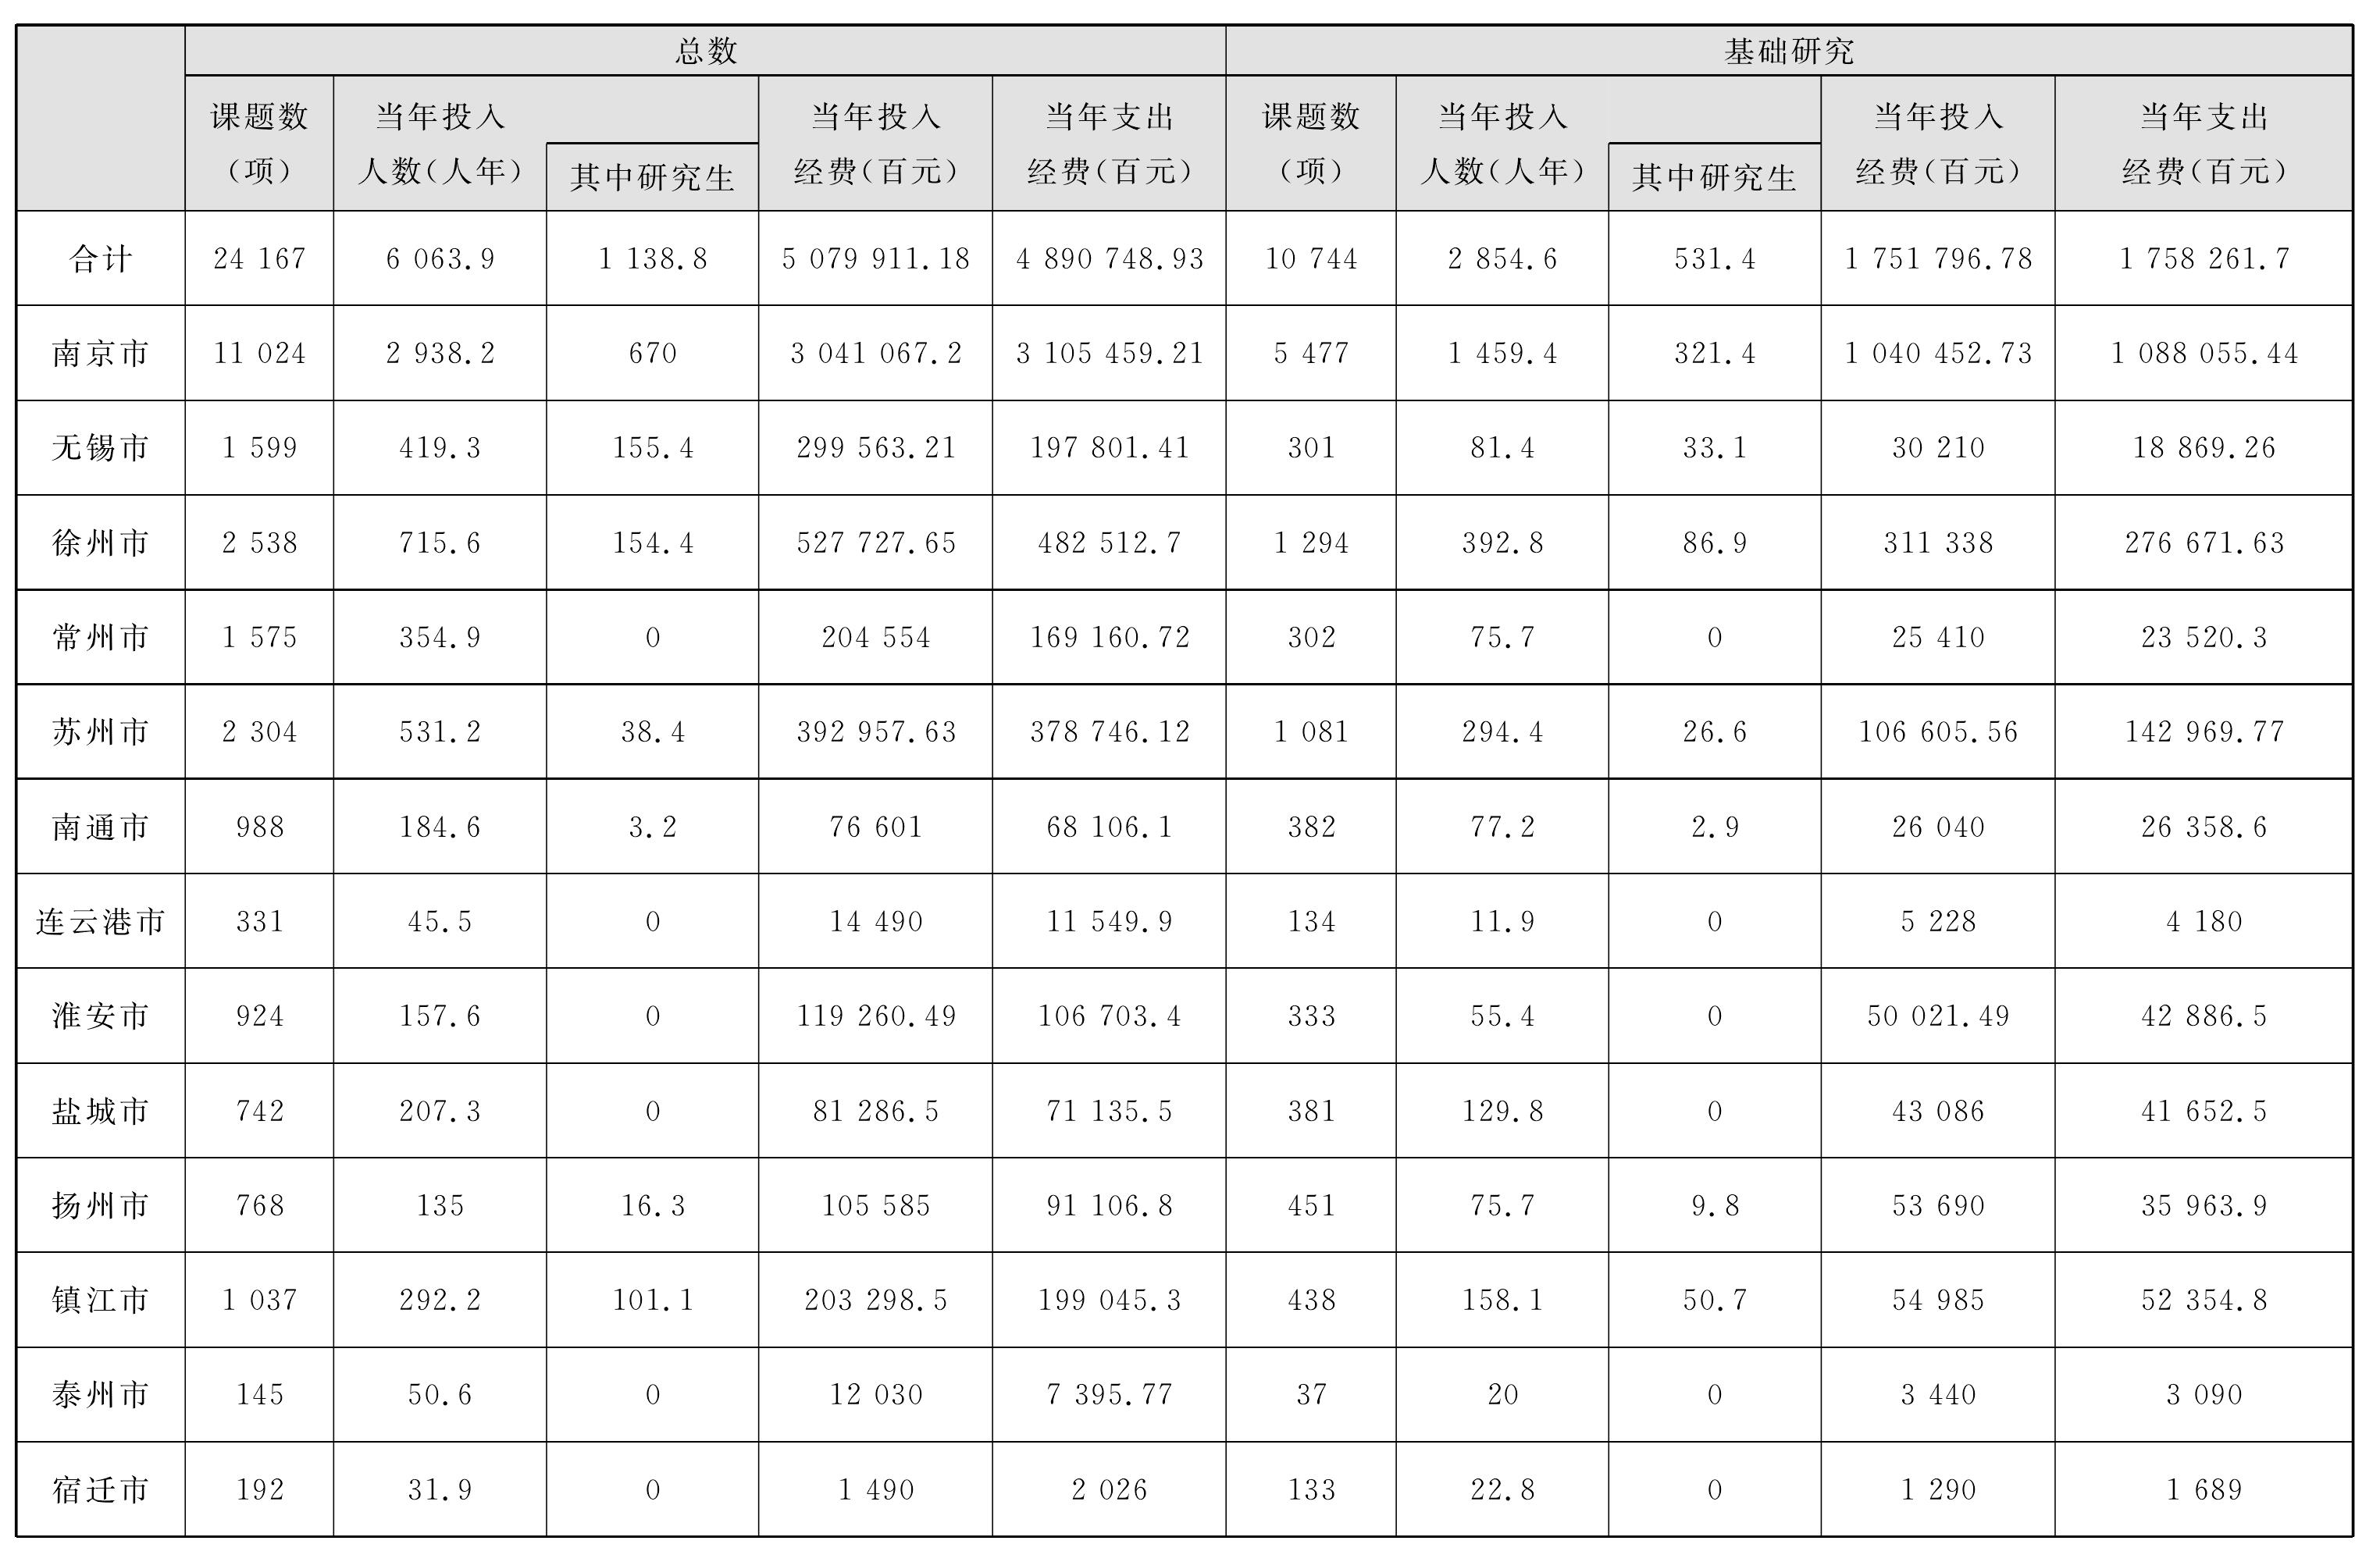 2.江苏省十三市高等学校人文、社会科学研究与发展经费情况表